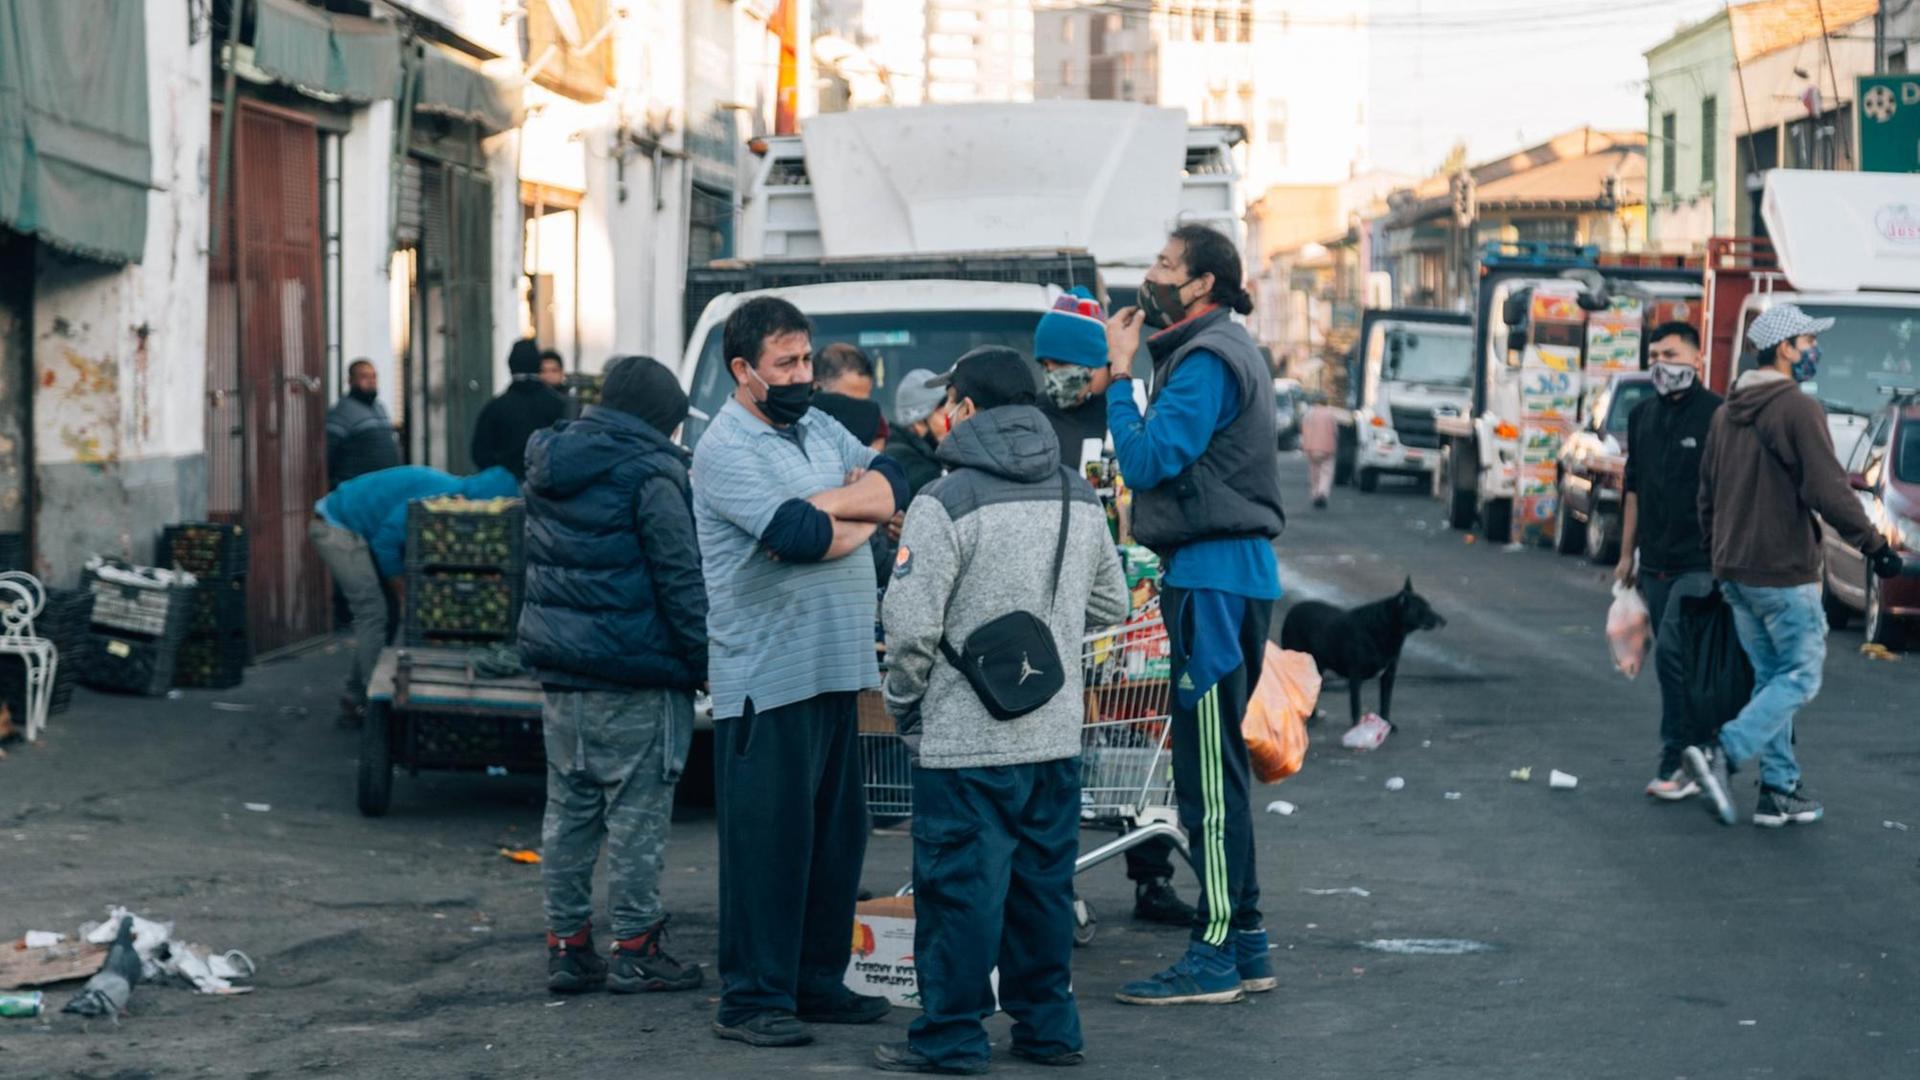 Alltag am Morgen des ersten Tags der Quarantäne in Santiago de Chile, dem 16. Mai 2020. Die Menschen am Vega-Zentralmarkt tragen Masken und folgen damit den Auflagen.